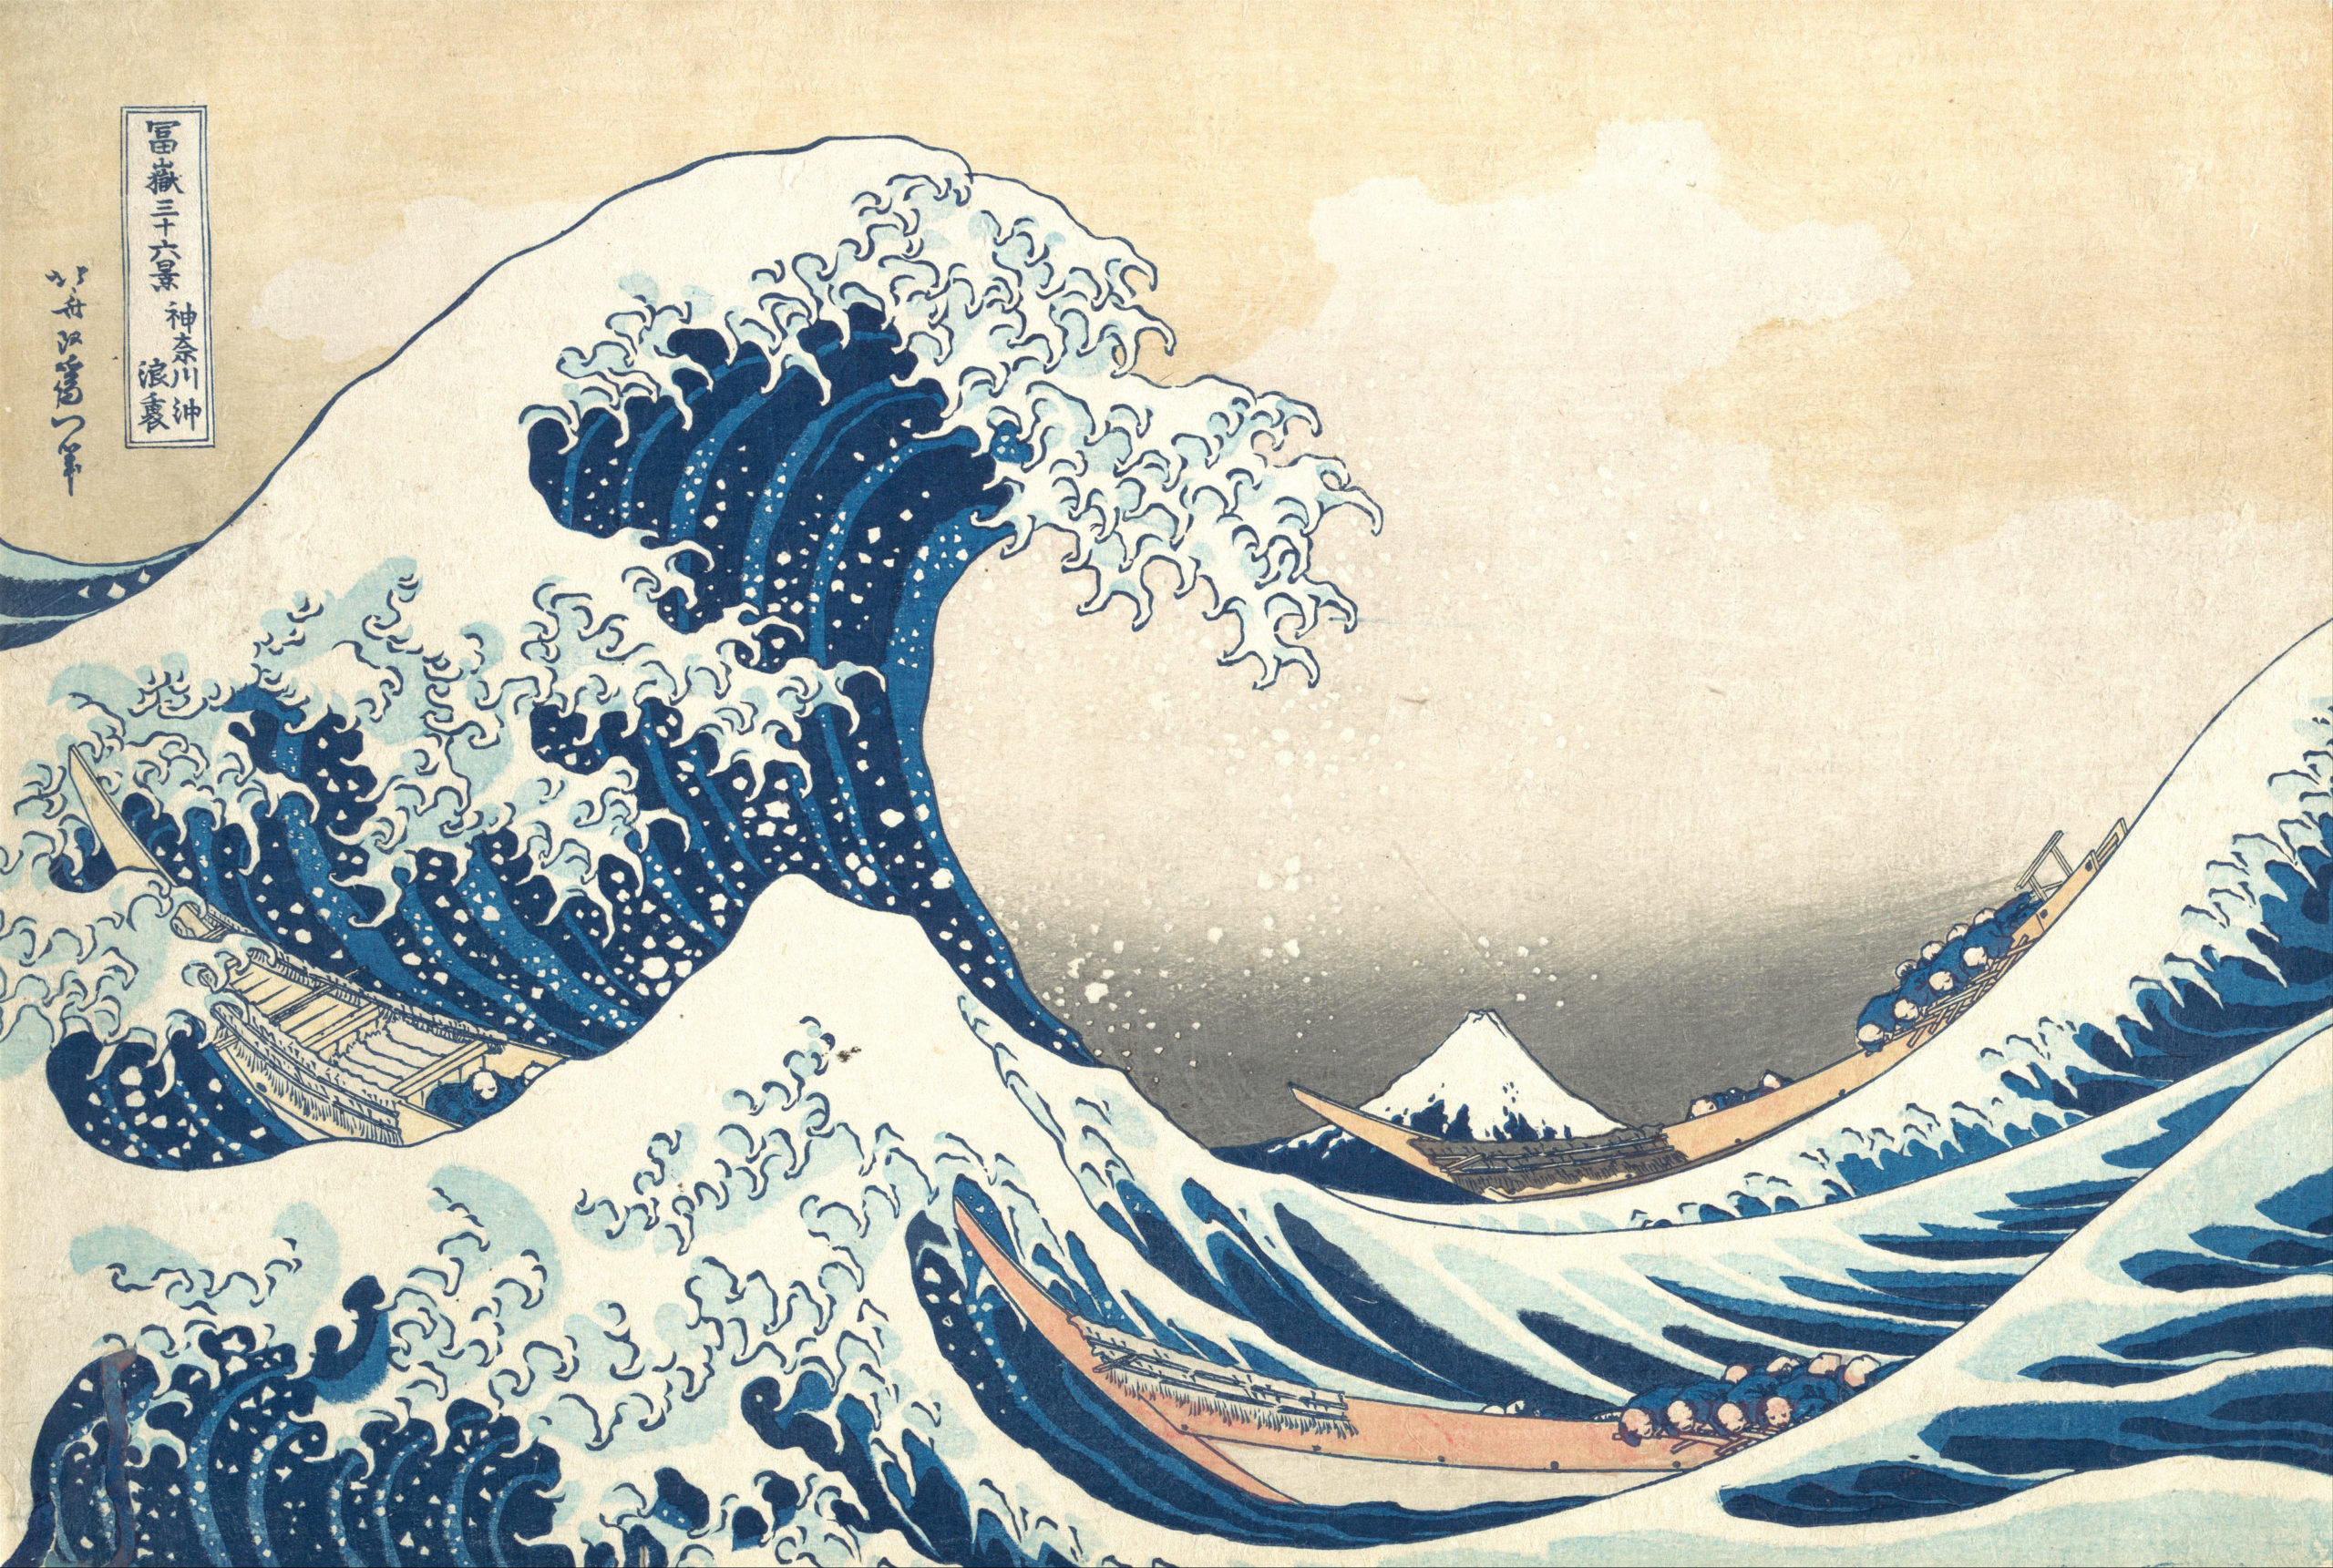 Suivons cette invitation de Roger Keyes et Katsushika Hokusai de laisser la vie vivre à travers nous sans autre projet - pour les quelques minutes qui viennent - que de nous nous offrir de la tranquillité et de faire retour vers soi pour porter notre attention sur la vie en nous.